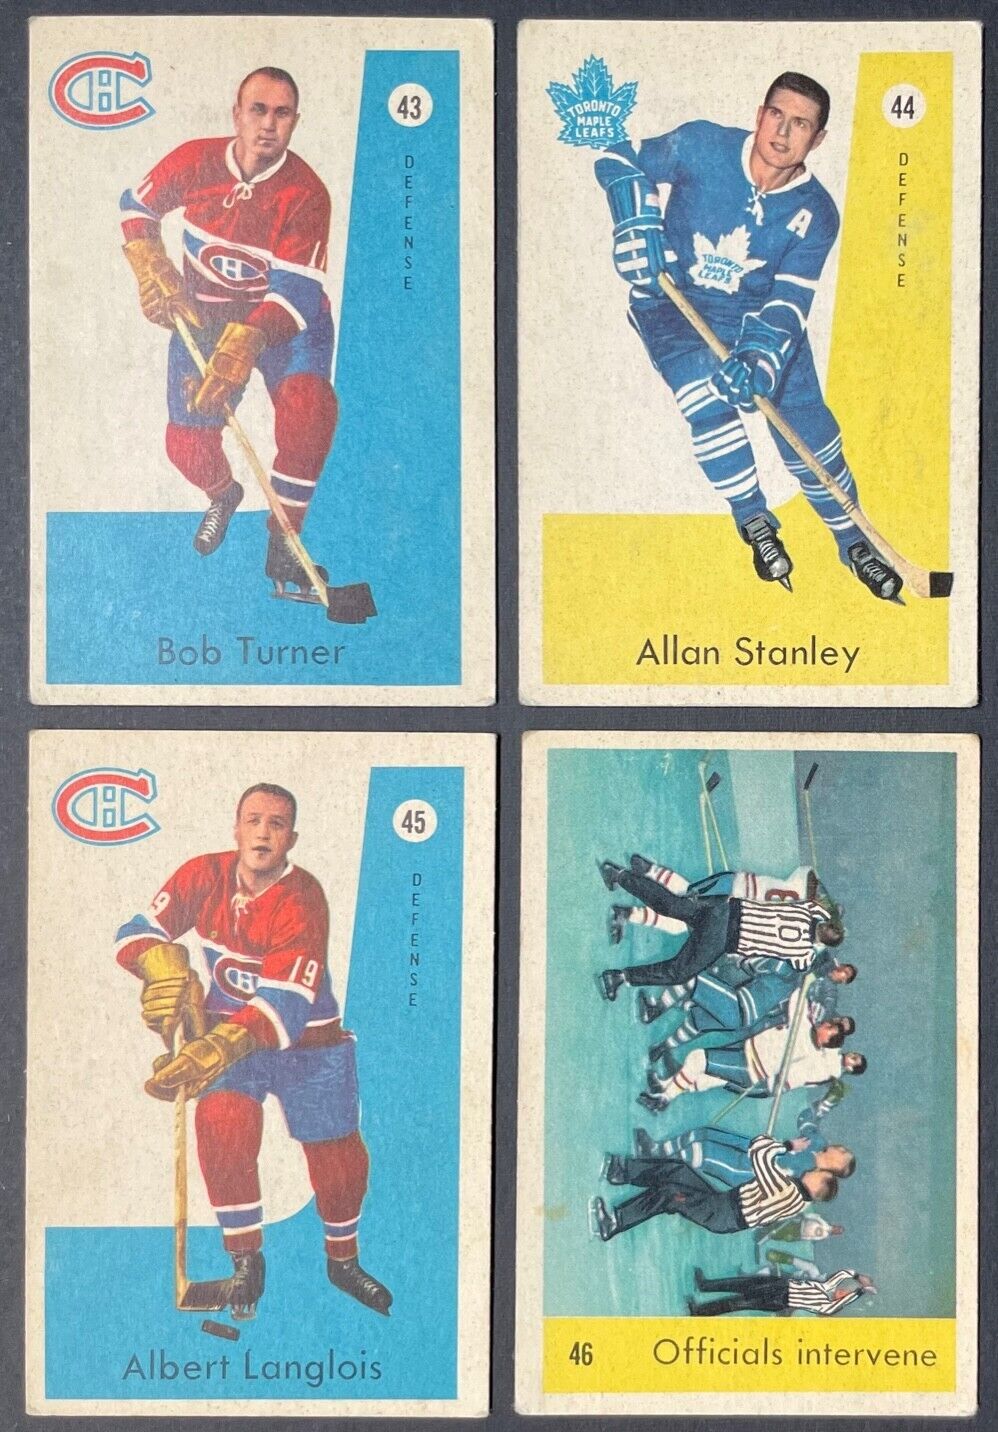 1959-60 Parkhurst Hockey Cards Full Set NHL Punch Imlach Carl